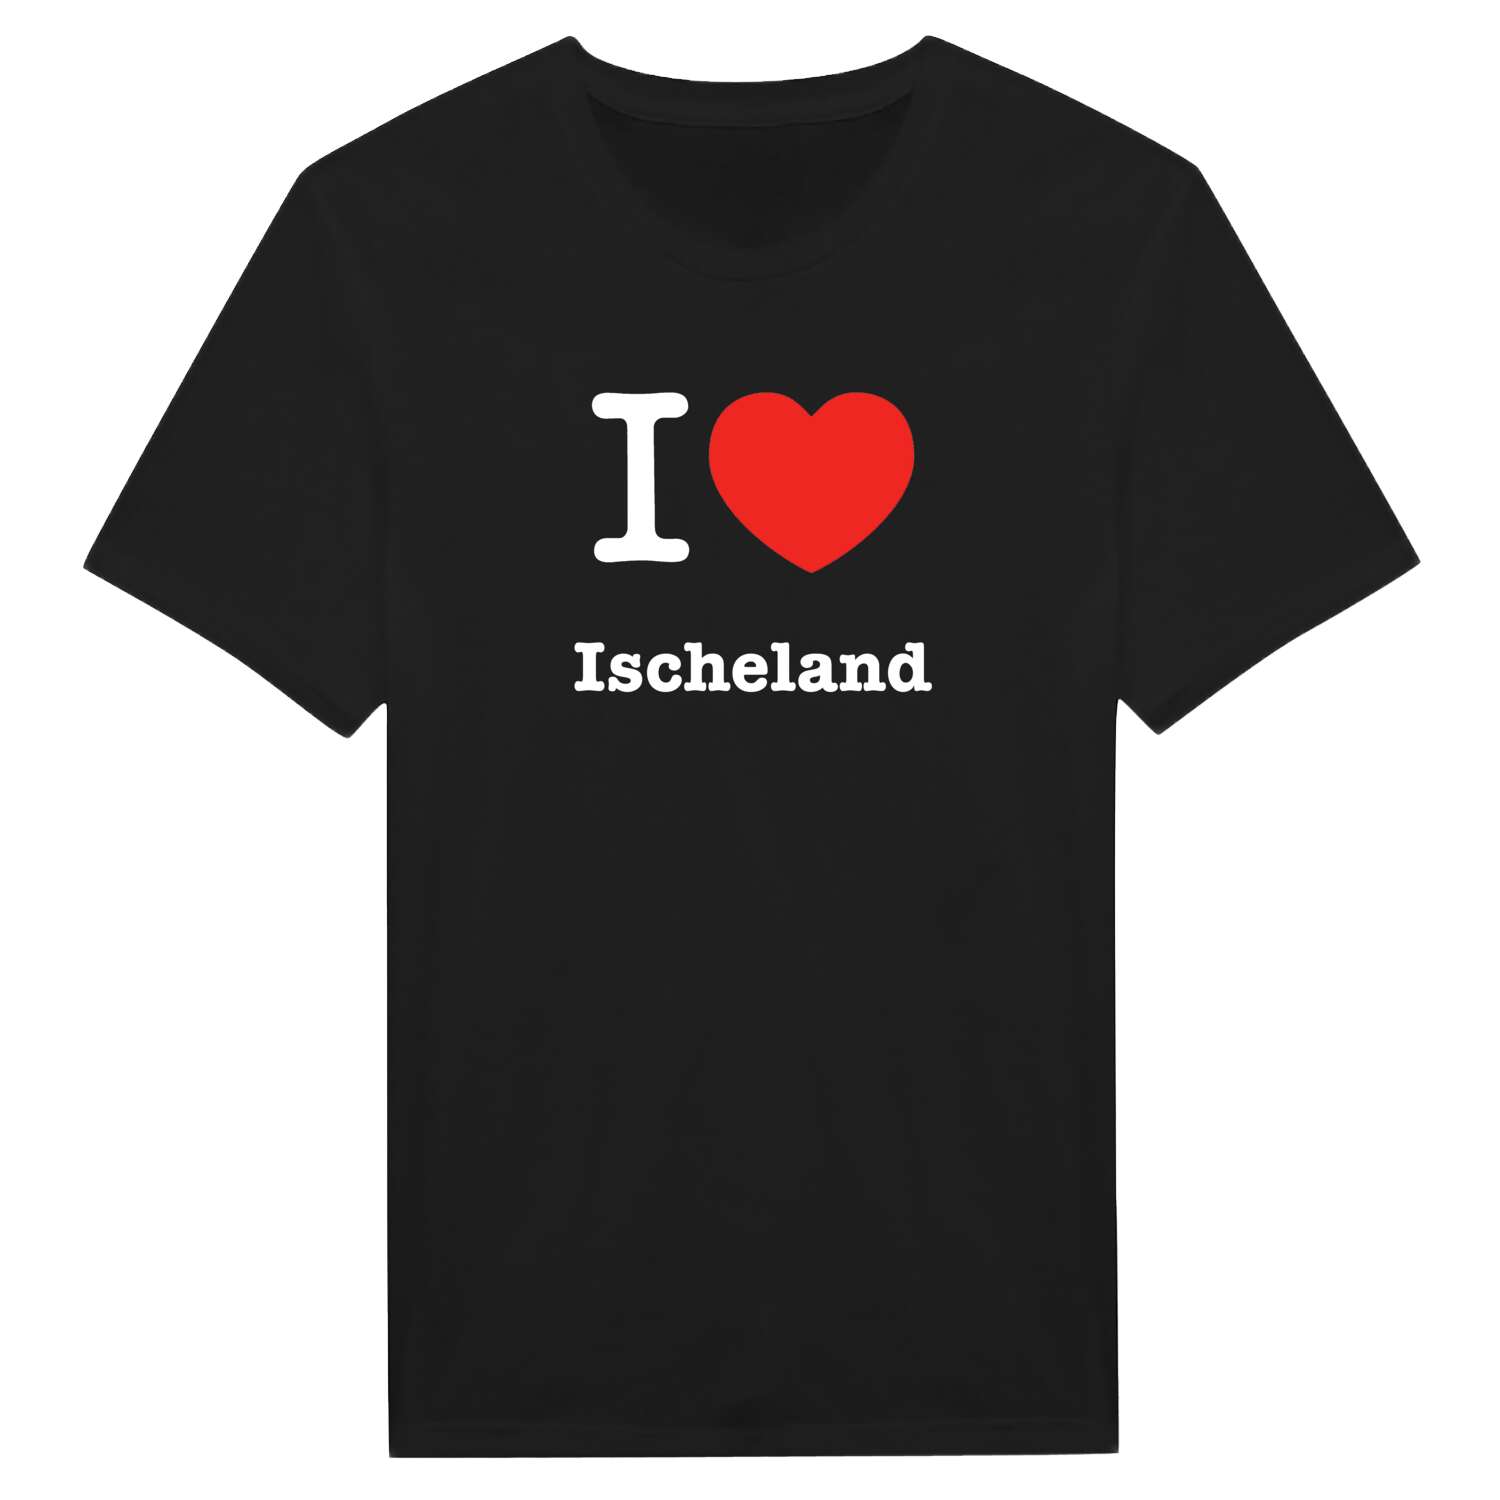 Ischeland T-Shirt »I love«